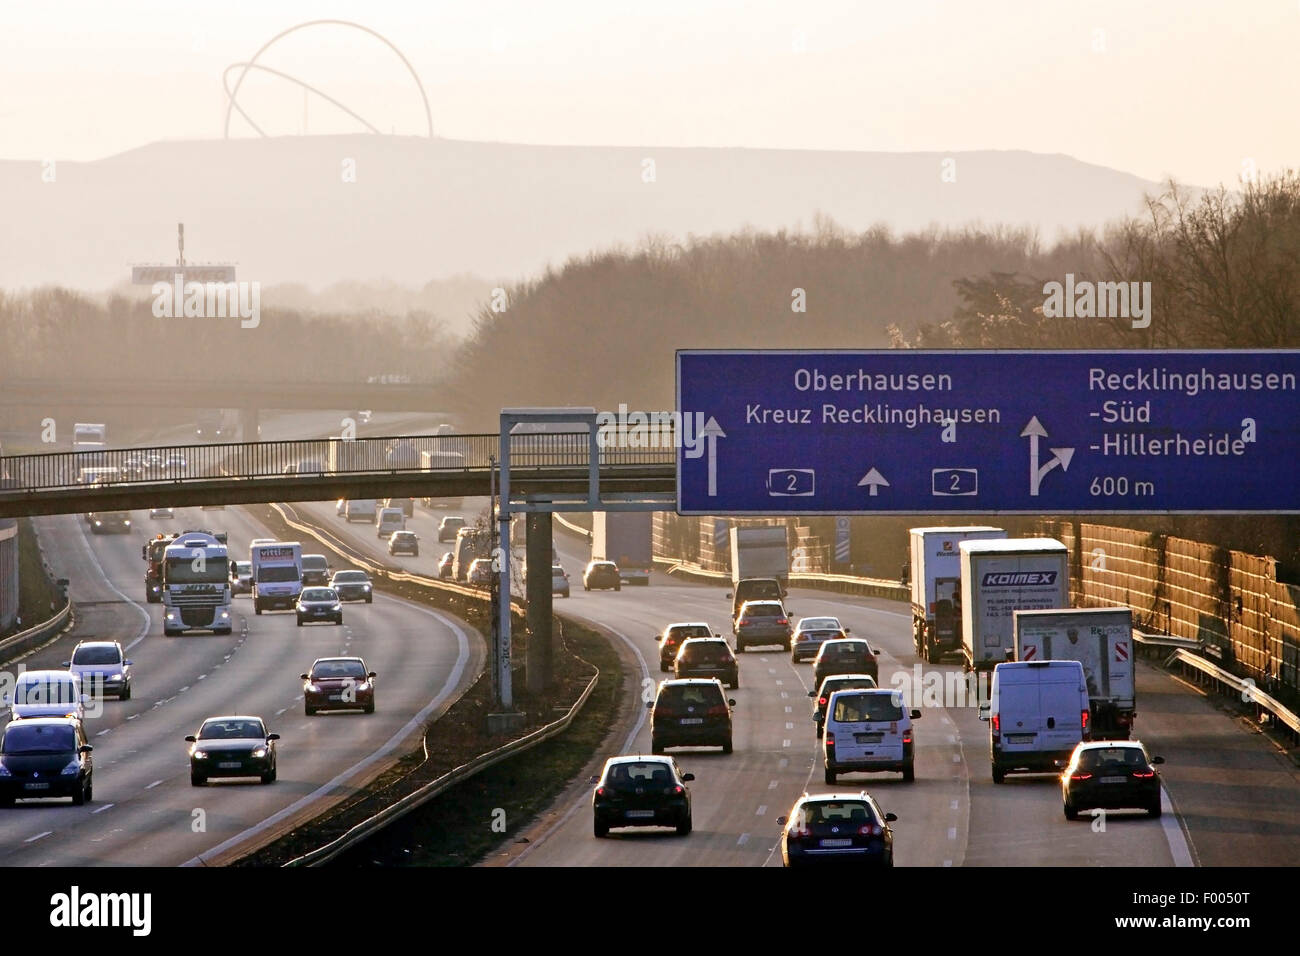 Verkehr auf der Autobahn A2 im Abendlicht, Horizont Observatorium Bergehalde Halde im Hintergrund, Recklinghausen, Ruhrgebiet, Nordrhein-Westfalen, Deutschland Stockfoto